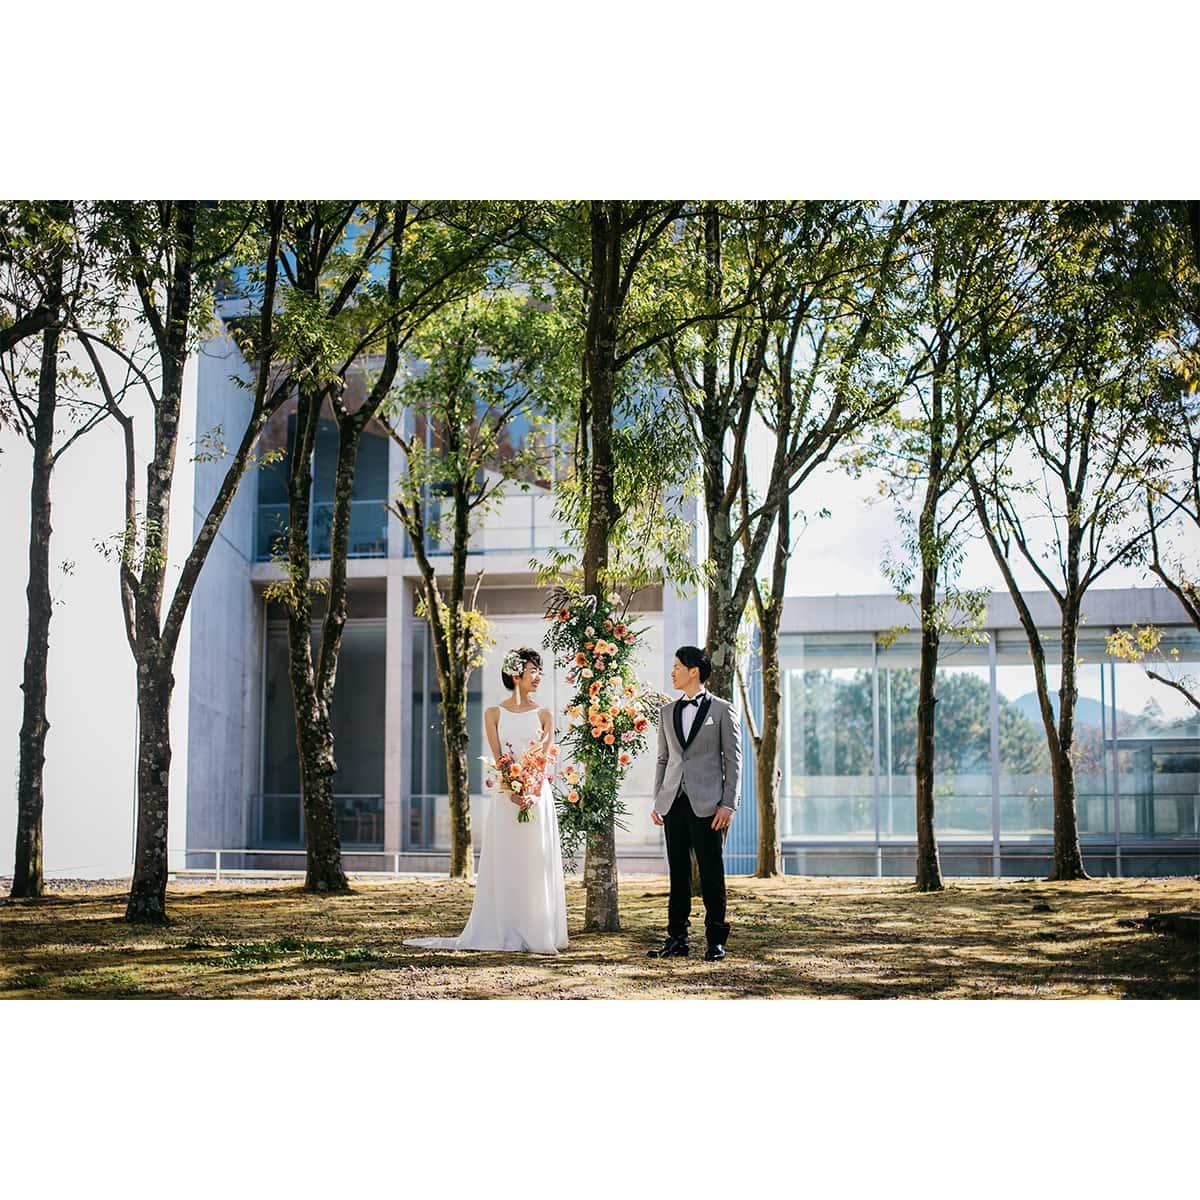 「花ノ結婚式屋」がプロデュースする新しい家族婚。安藤忠雄建築で特別で静謐なひと時を - Slide:5